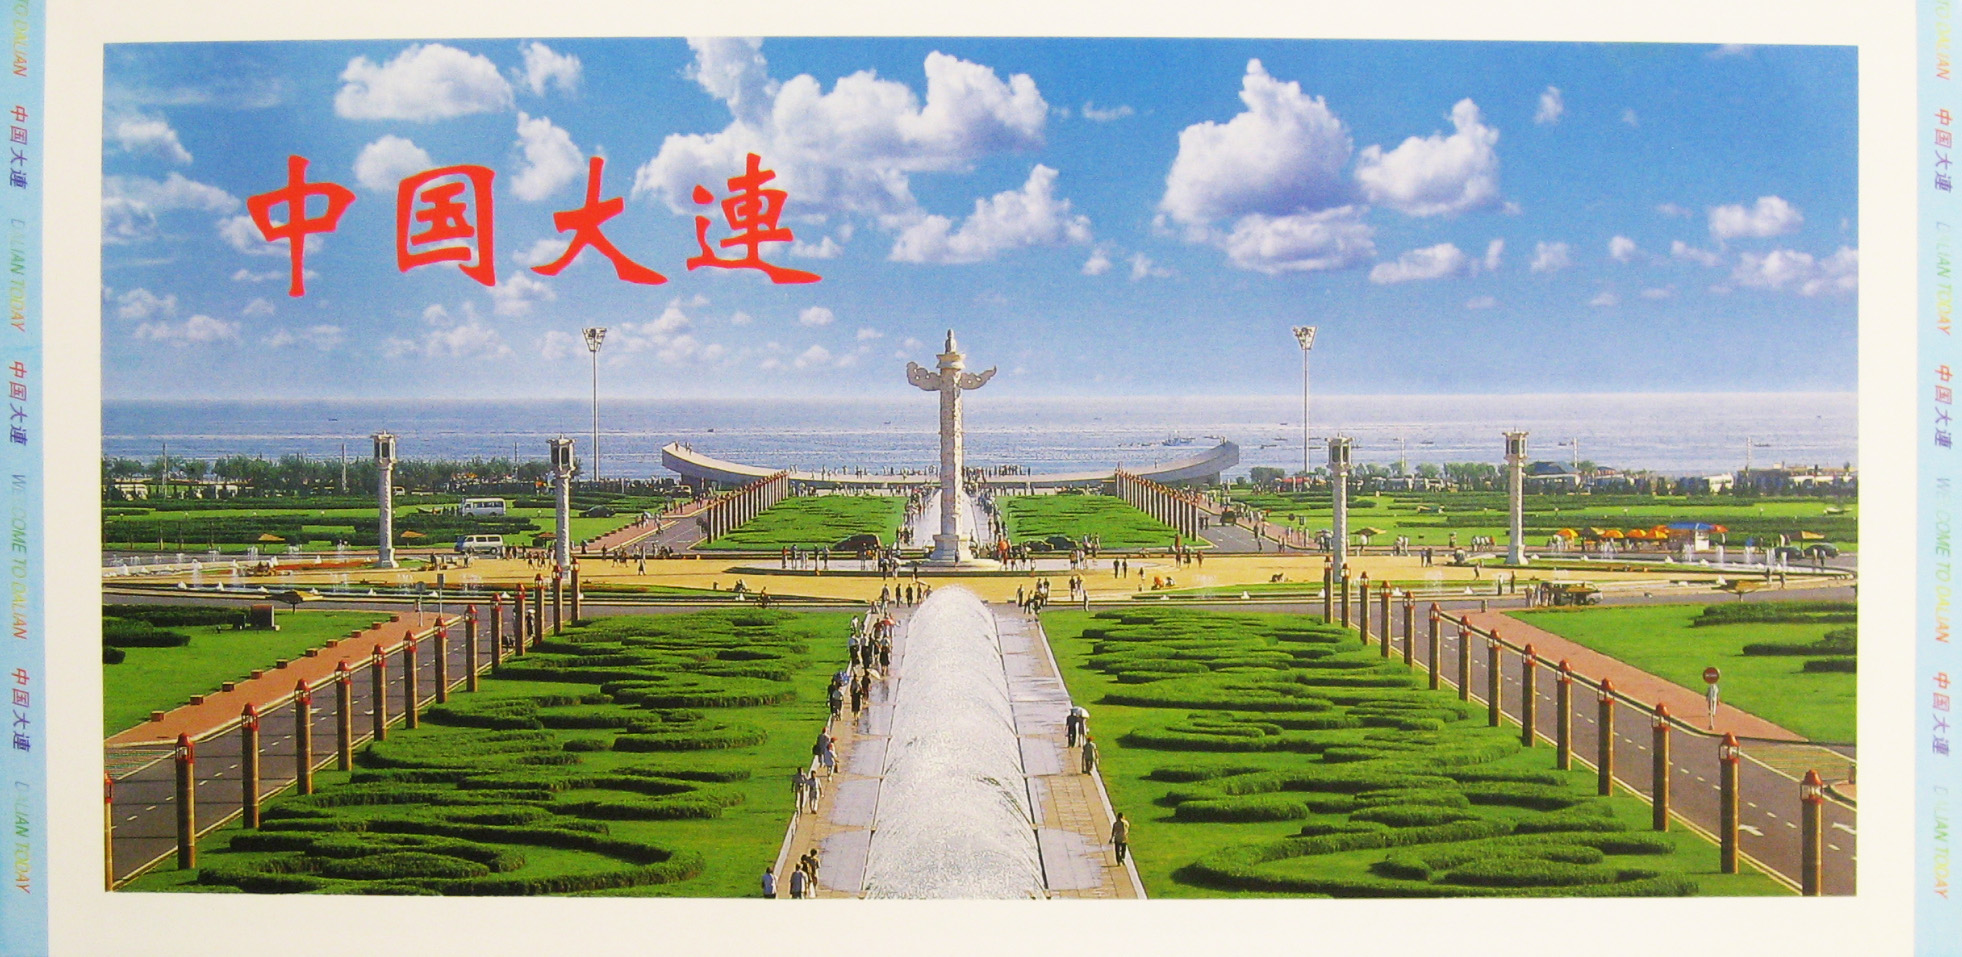 ジャパンエキスポ 北九州博覧祭2001-パンフレット-55